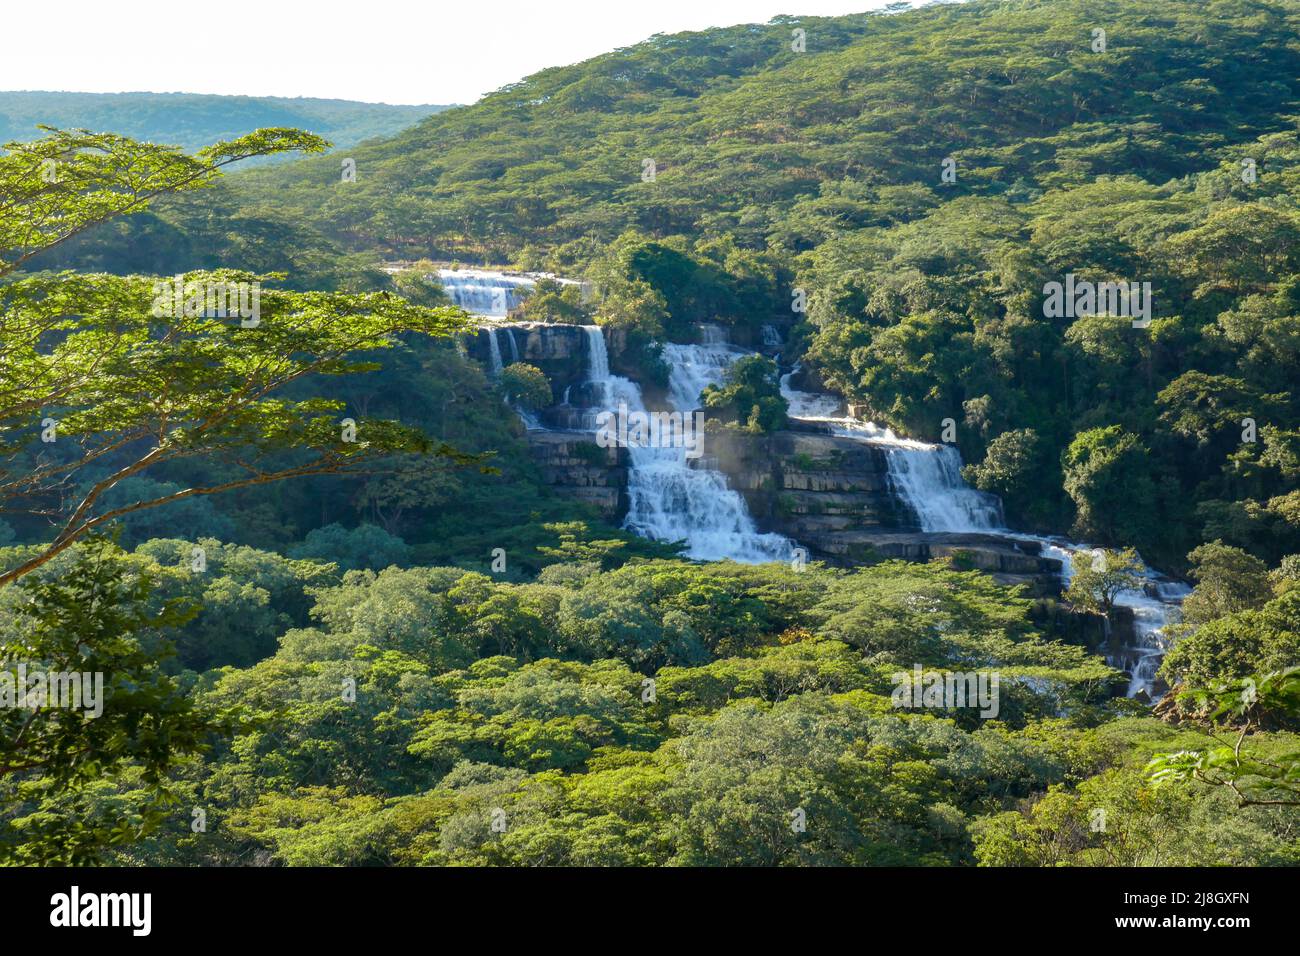 Scenic view of Kimani Waterfalls in Mpanga Kipengele National Reserve in Tanzania Stock Photo